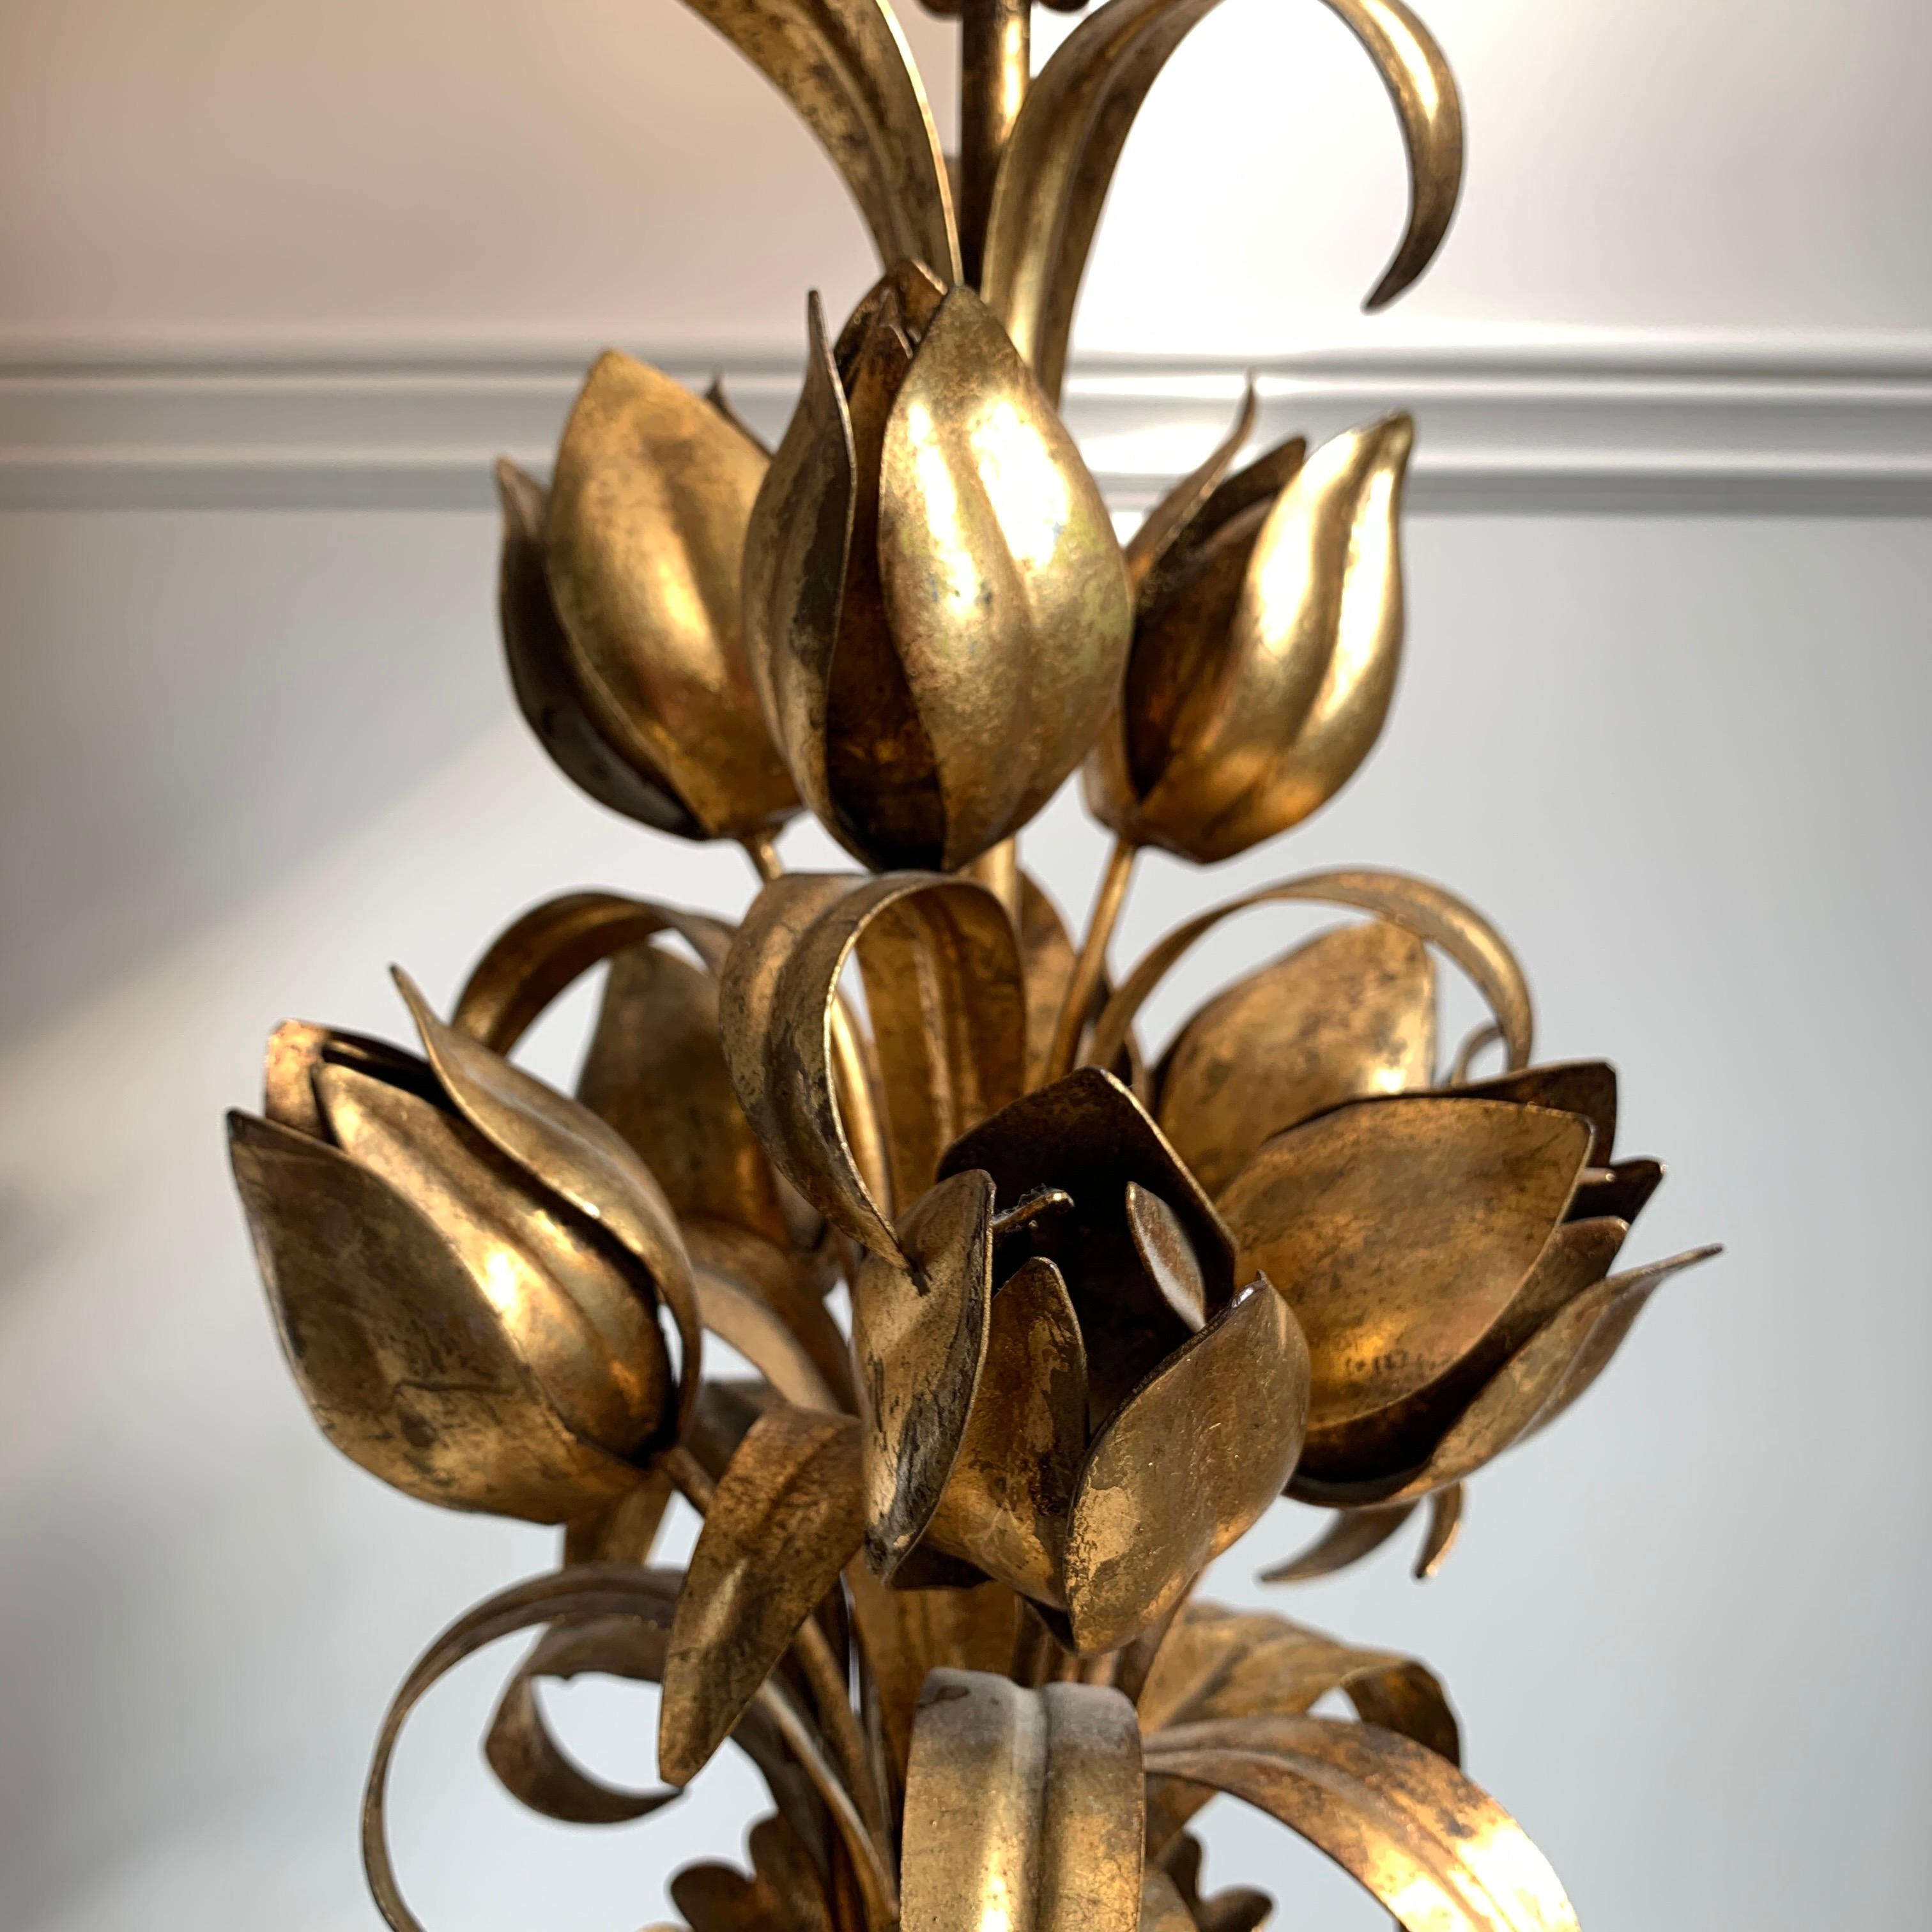 Lampe de table italienne à fleurs dorées du milieu du siècle, vers les années 1950. Lampe de table en métal représentant un magnifique bouquet de fleurs de type tulipe. Hauteur totale de 90,5 cm (abat-jour compris), base de 17 cm de large, abat-jour